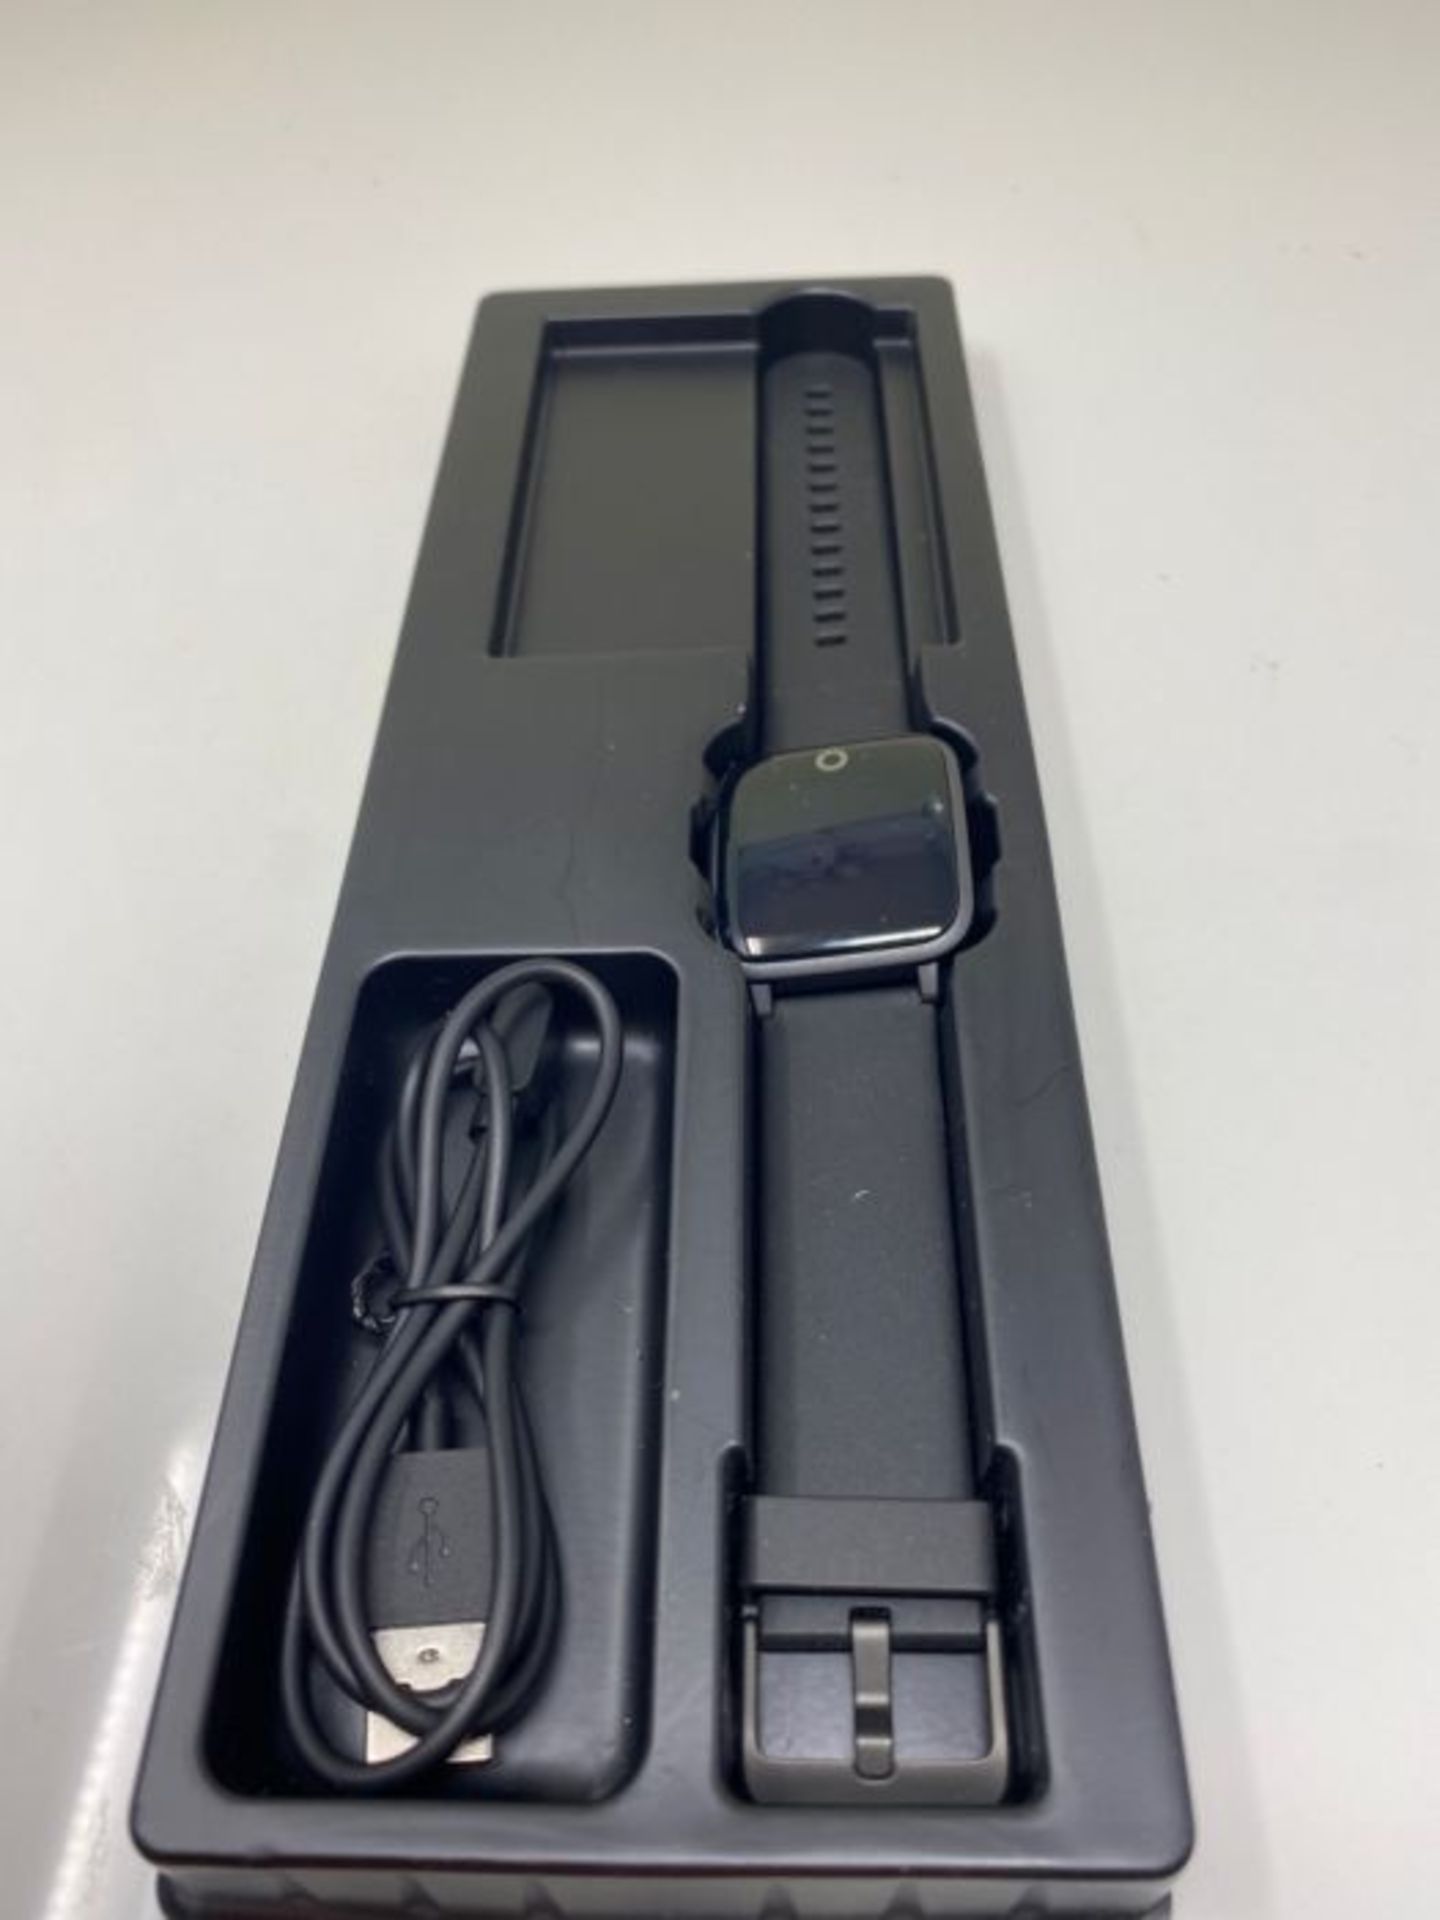 Smartwatch, KUNGIX Fitness Armband Tracker Uhr IP68 Wasserdicht, Sportuhr mit Schrittz - Image 3 of 3